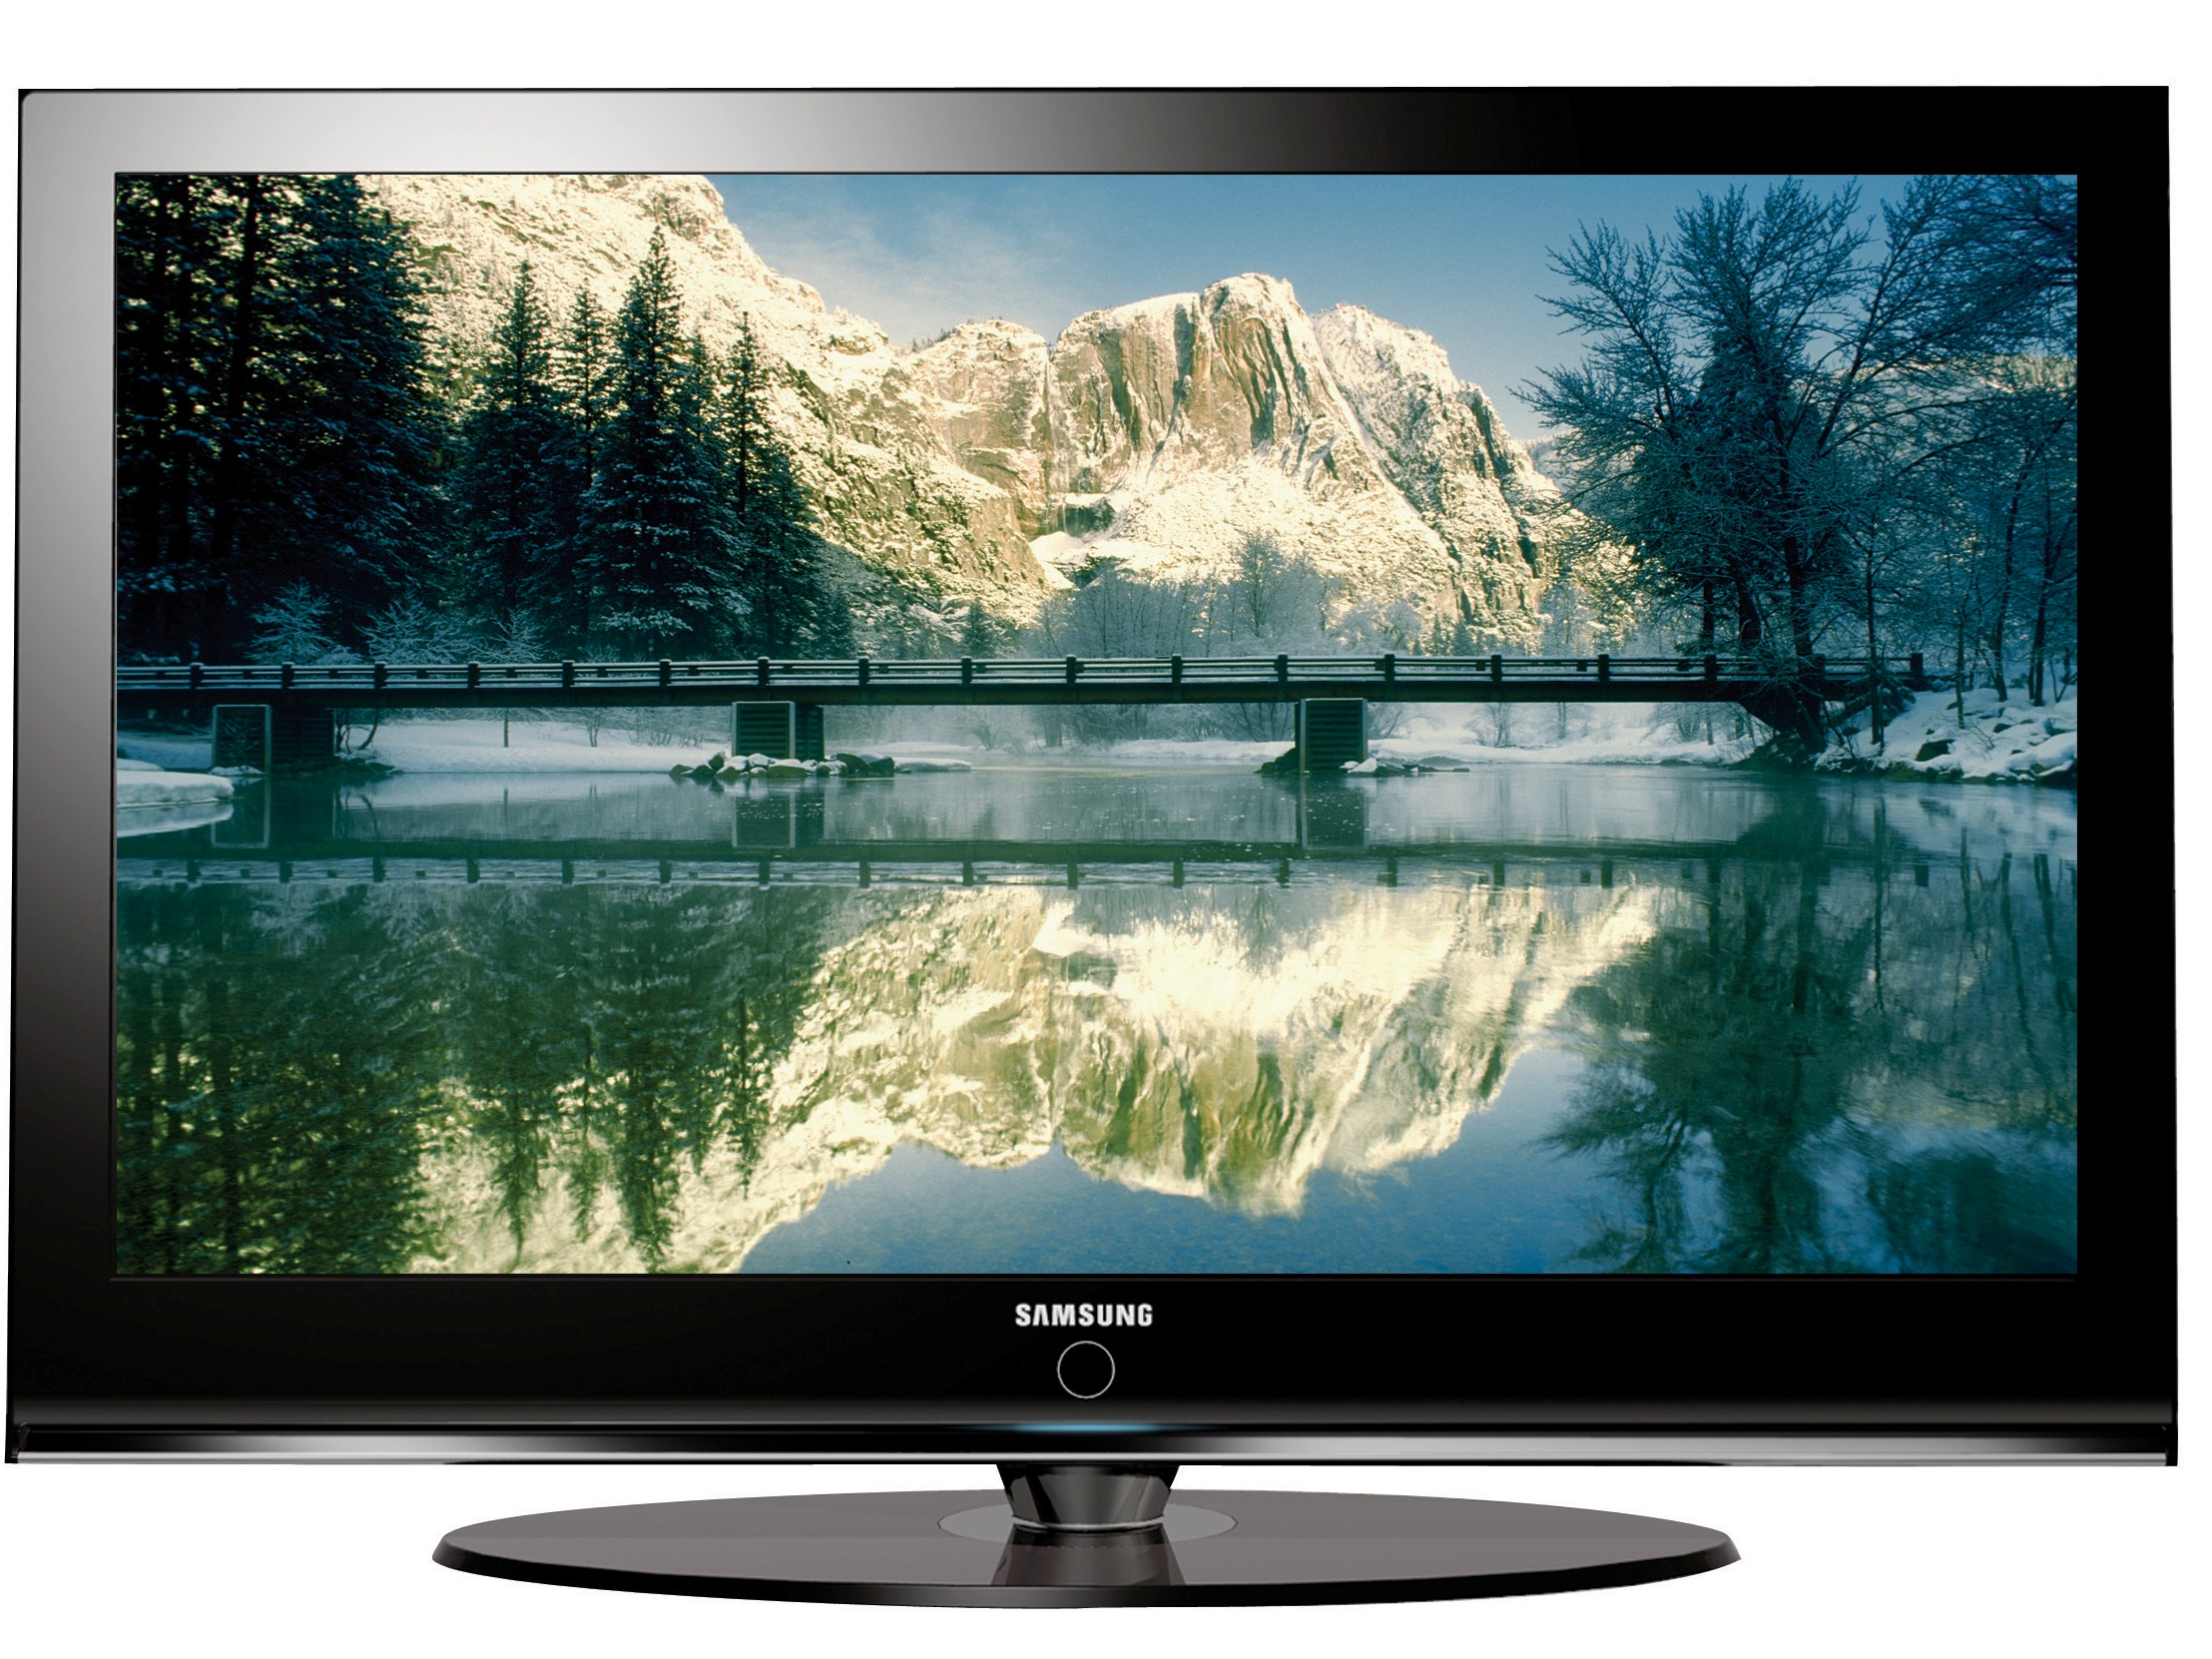 Samsung 2007 телевизор плазма